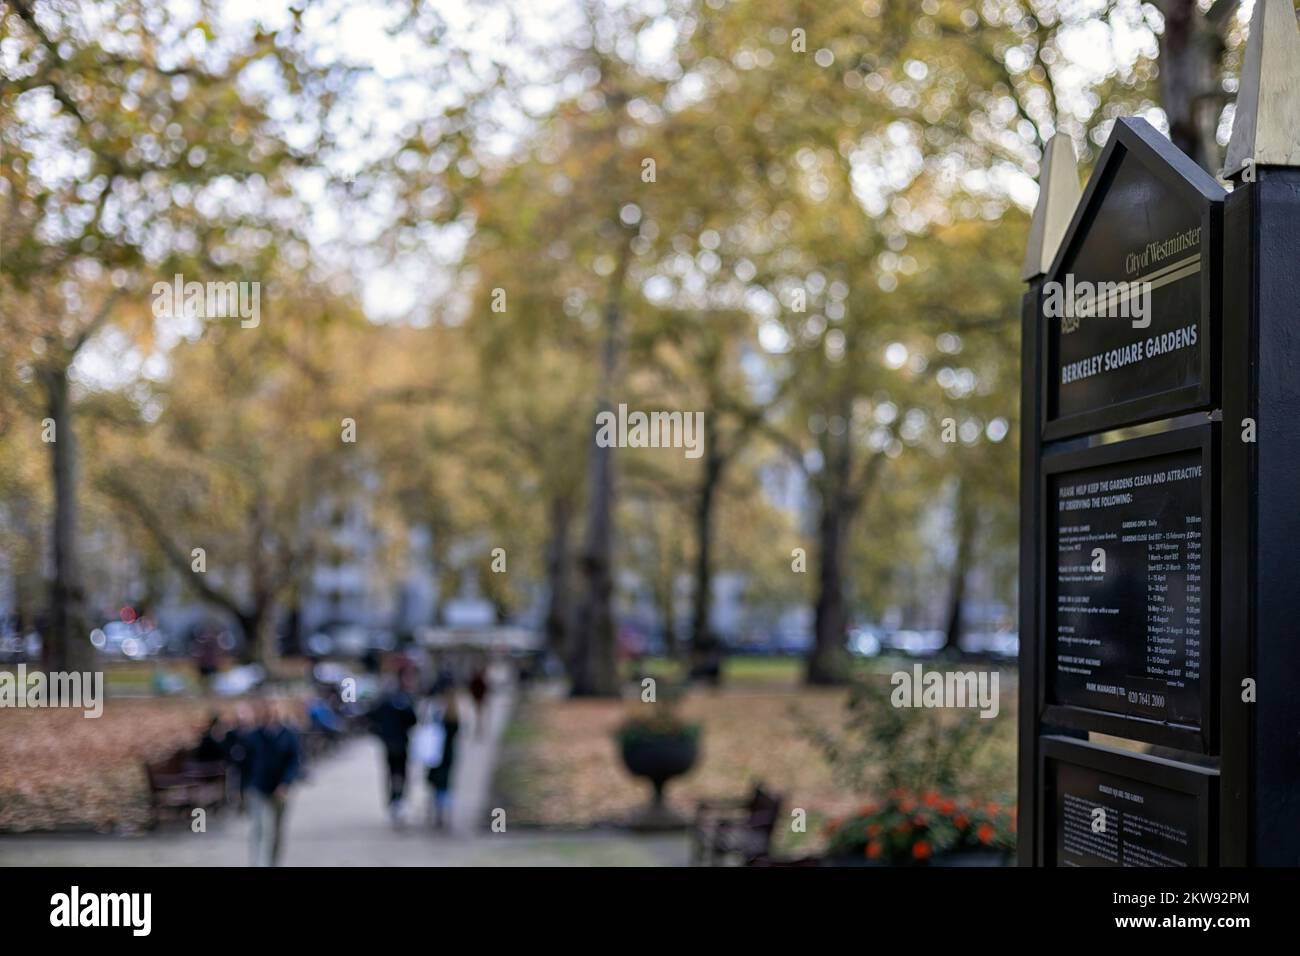 LONDRES, Reino Unido - 16 DE NOVIEMBRE de 2022: Cartel informativo de madera en la entrada de Berkeley Square Gardens, Mayfair, con fondo difuso Foto de stock